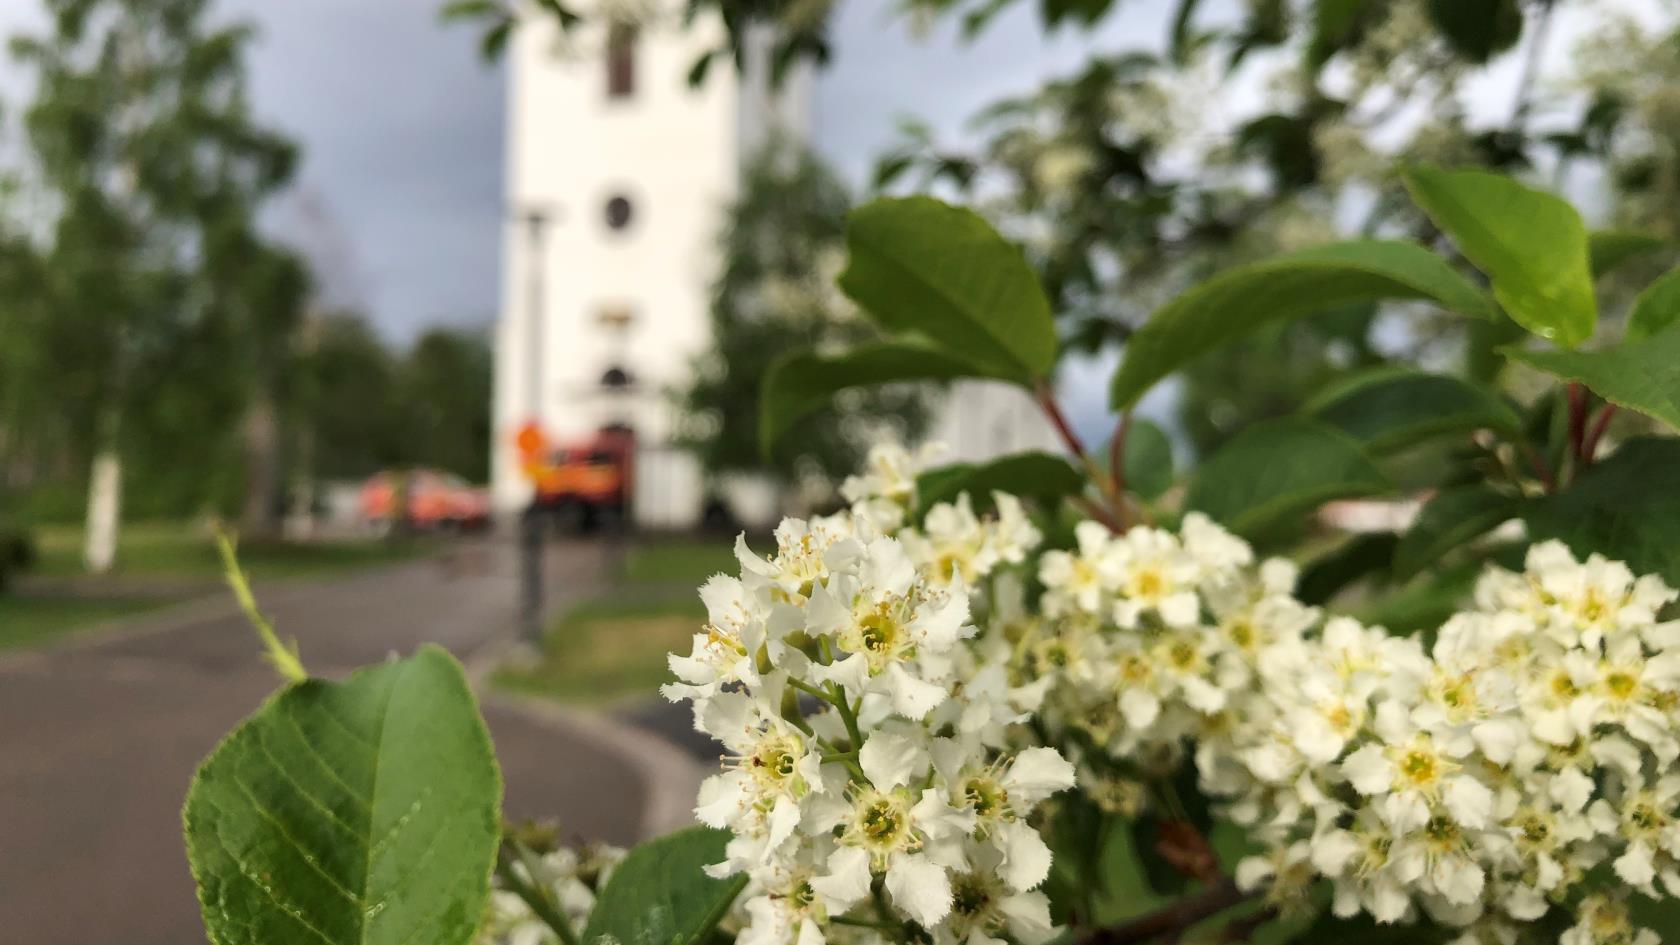 Vita blommor som blommar framför en kyrka.